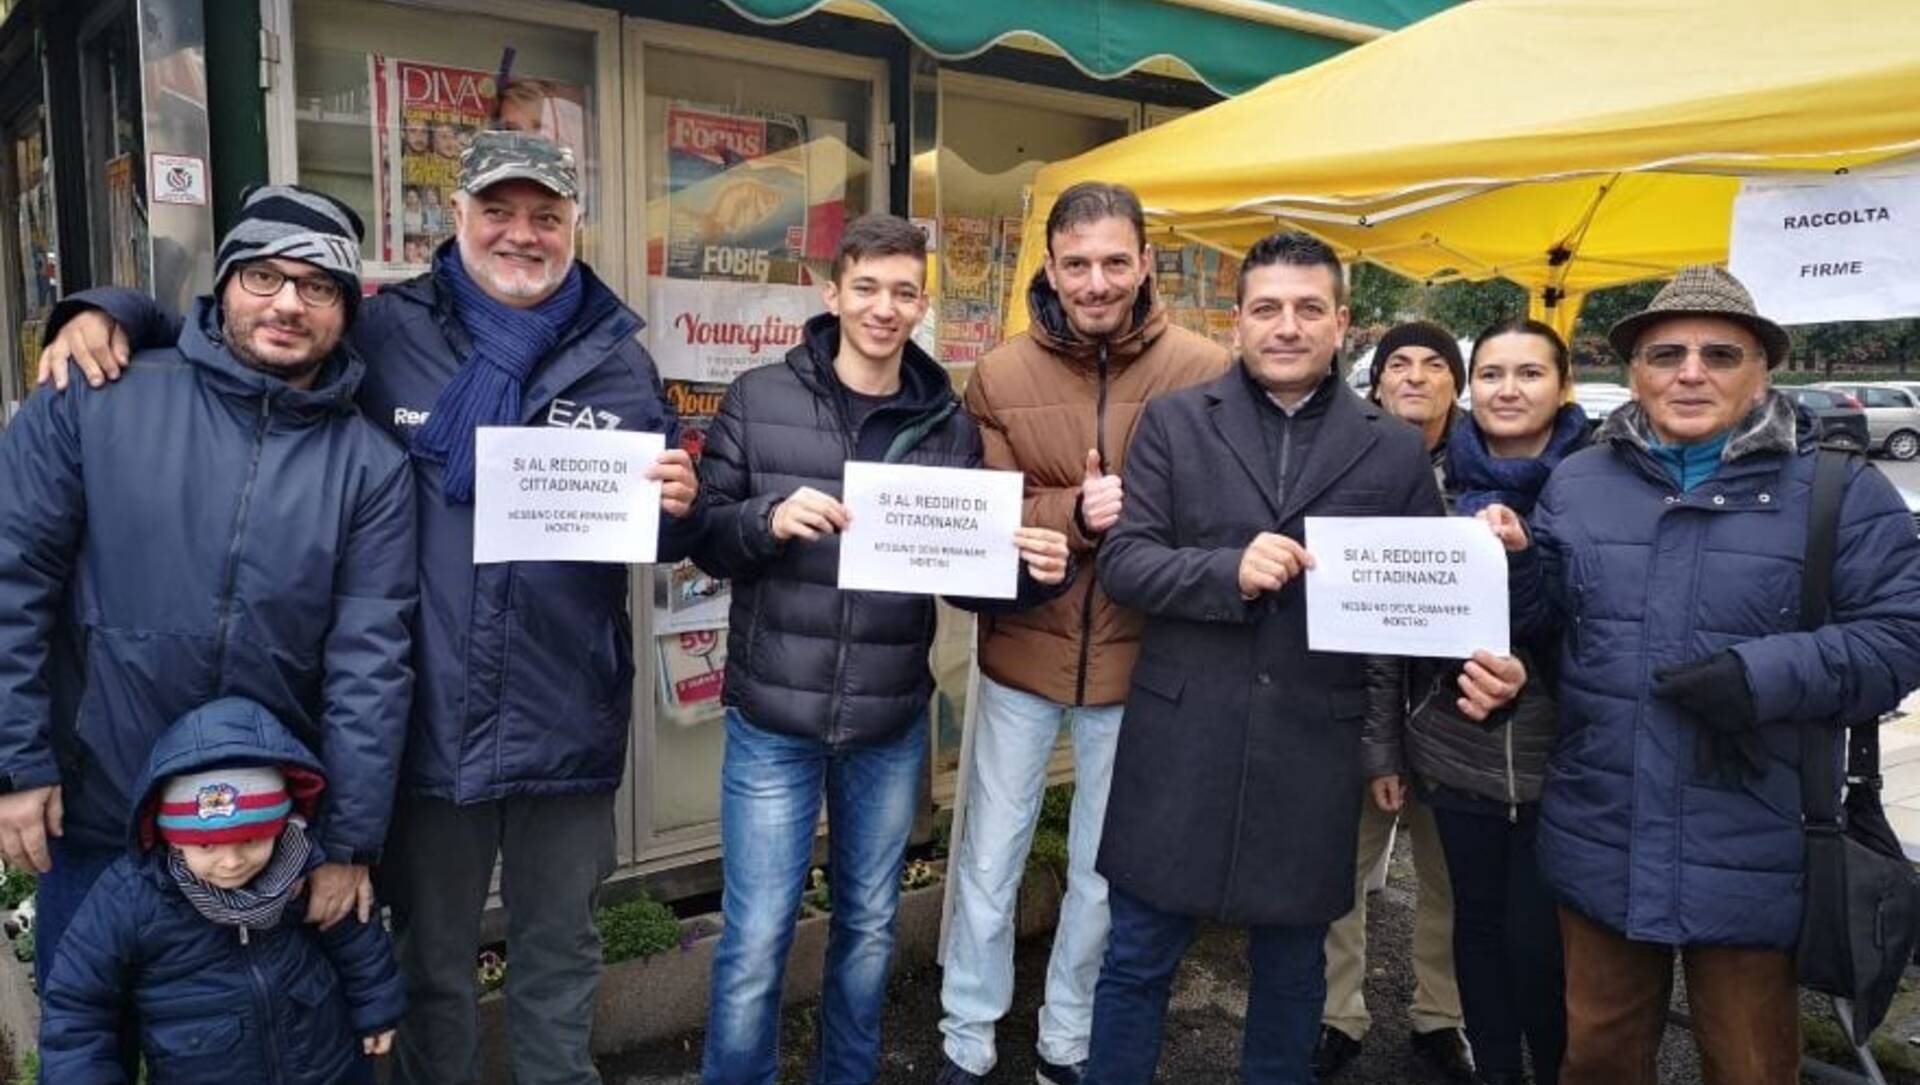 Limbiate, M5S replica a Fratelli d’Italia su reddito di cittadinanza